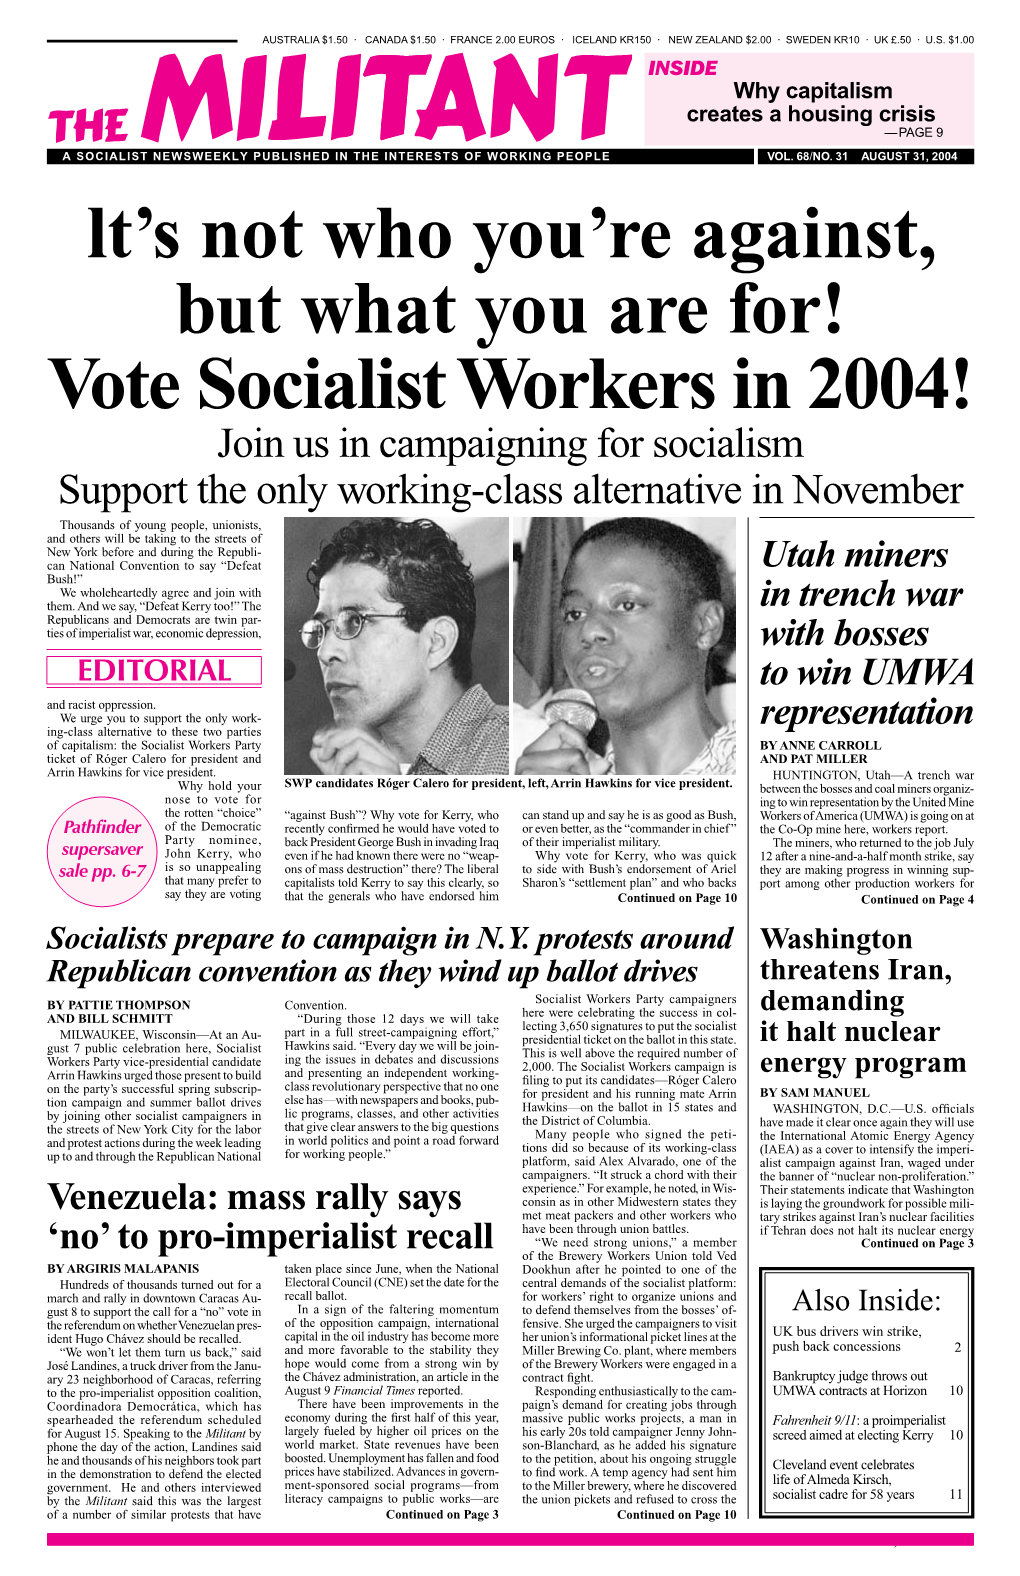 Vote Socialist Workers in 2004!